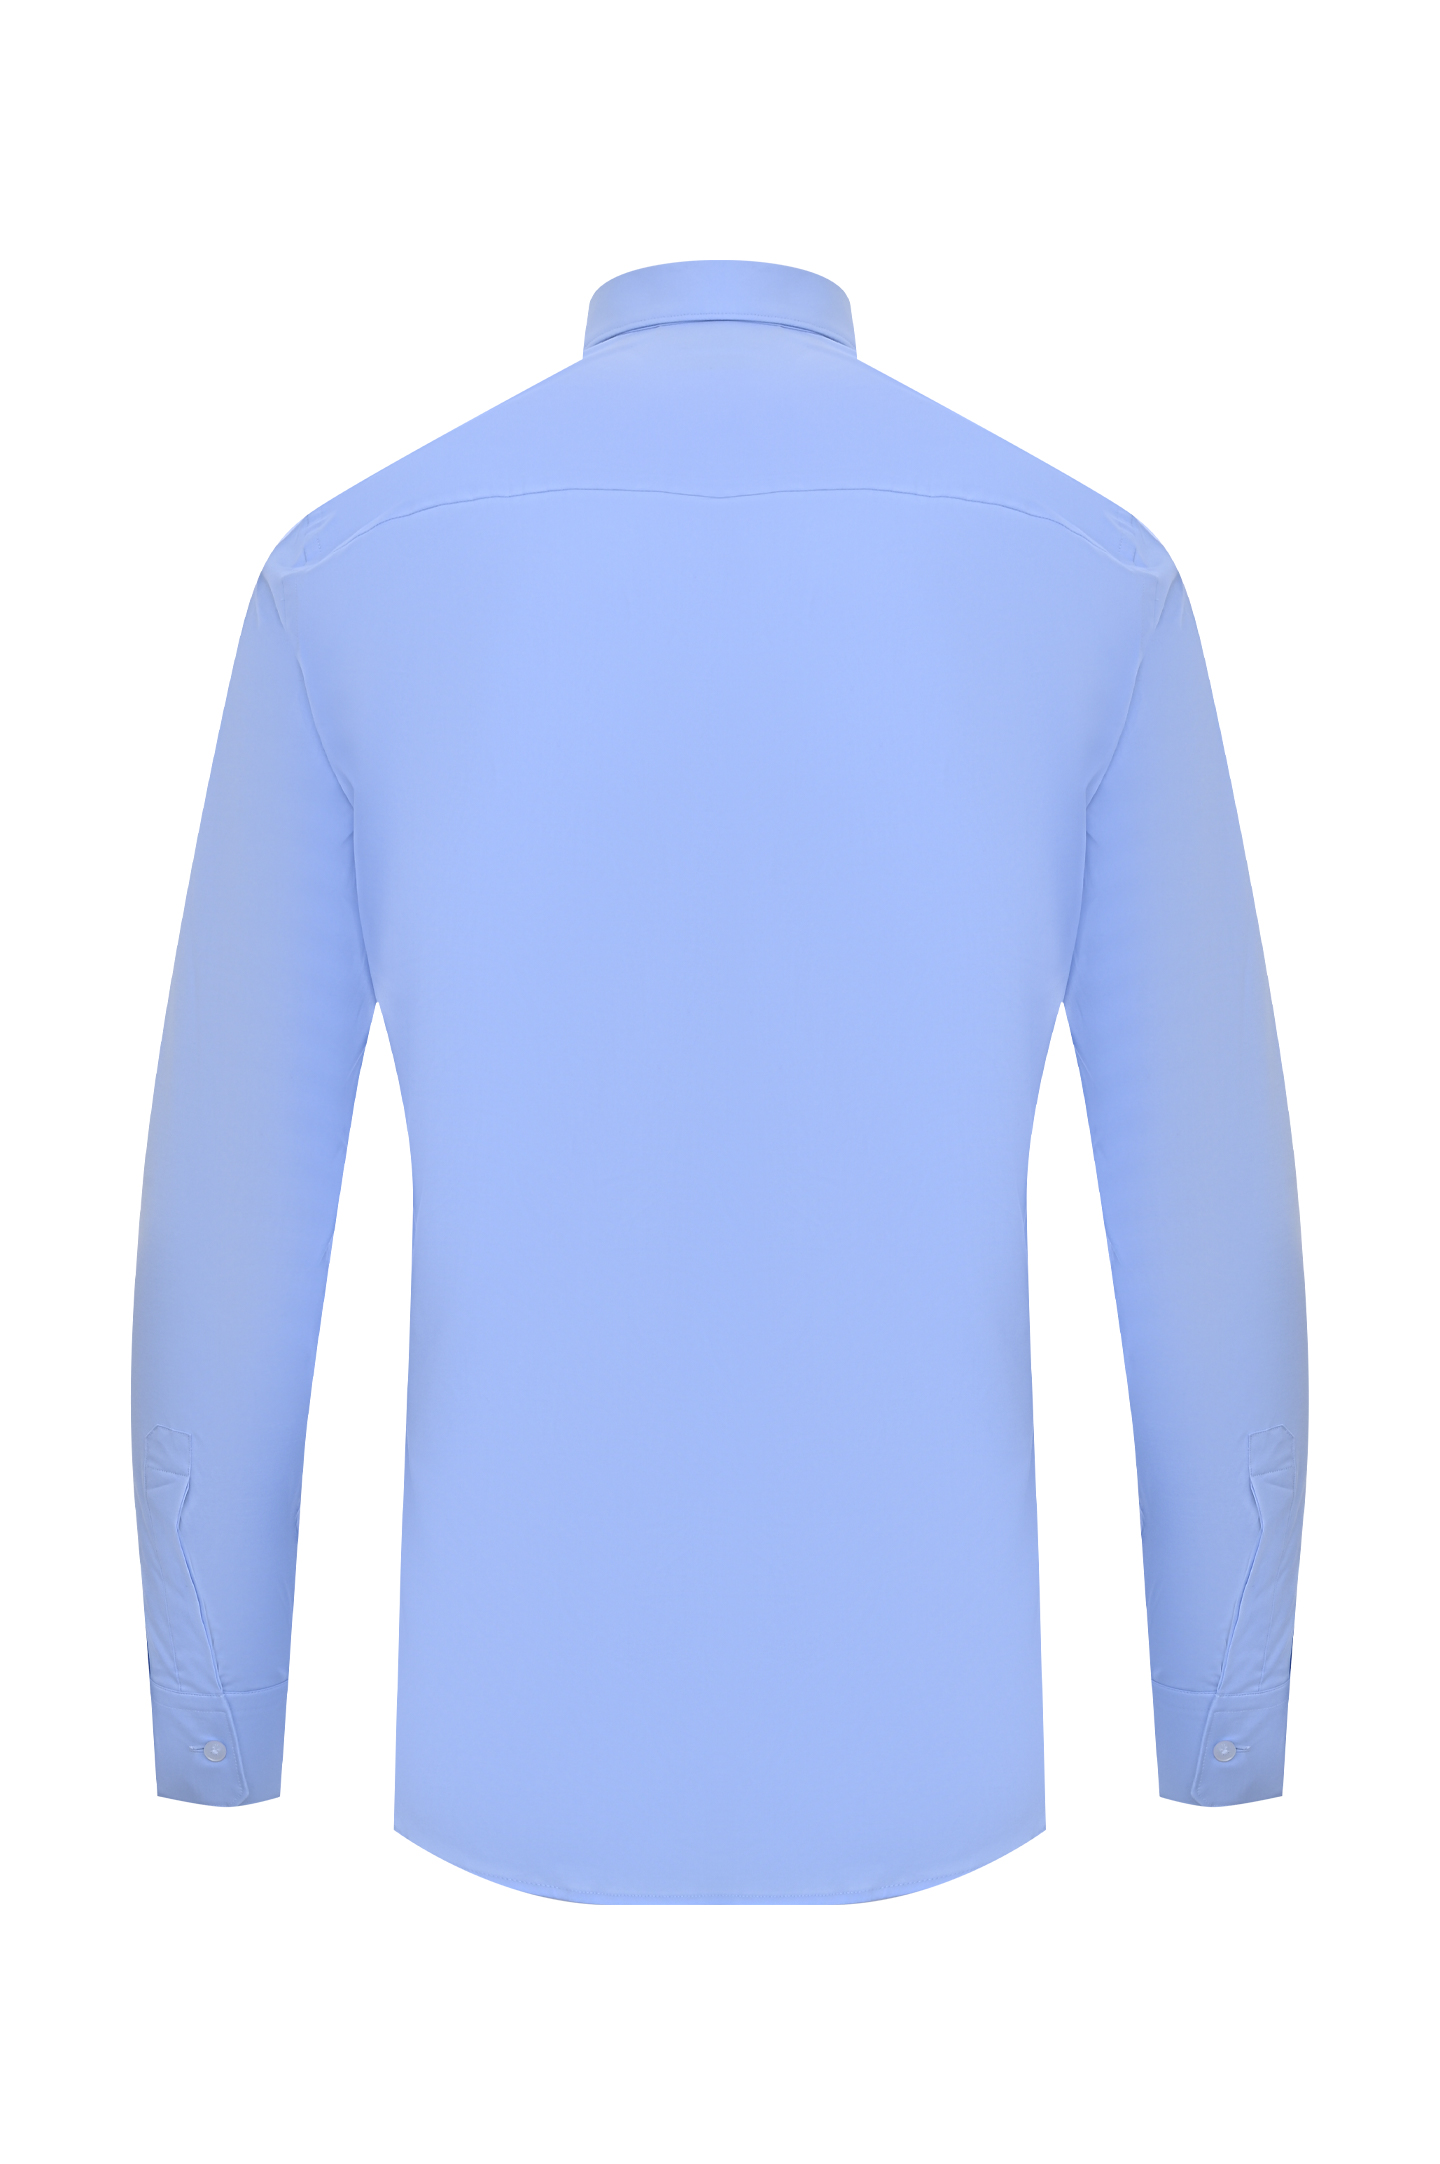 Рубашка Z ZEGNA 305101 ZCRC1, цвет: Голубой, Мужской